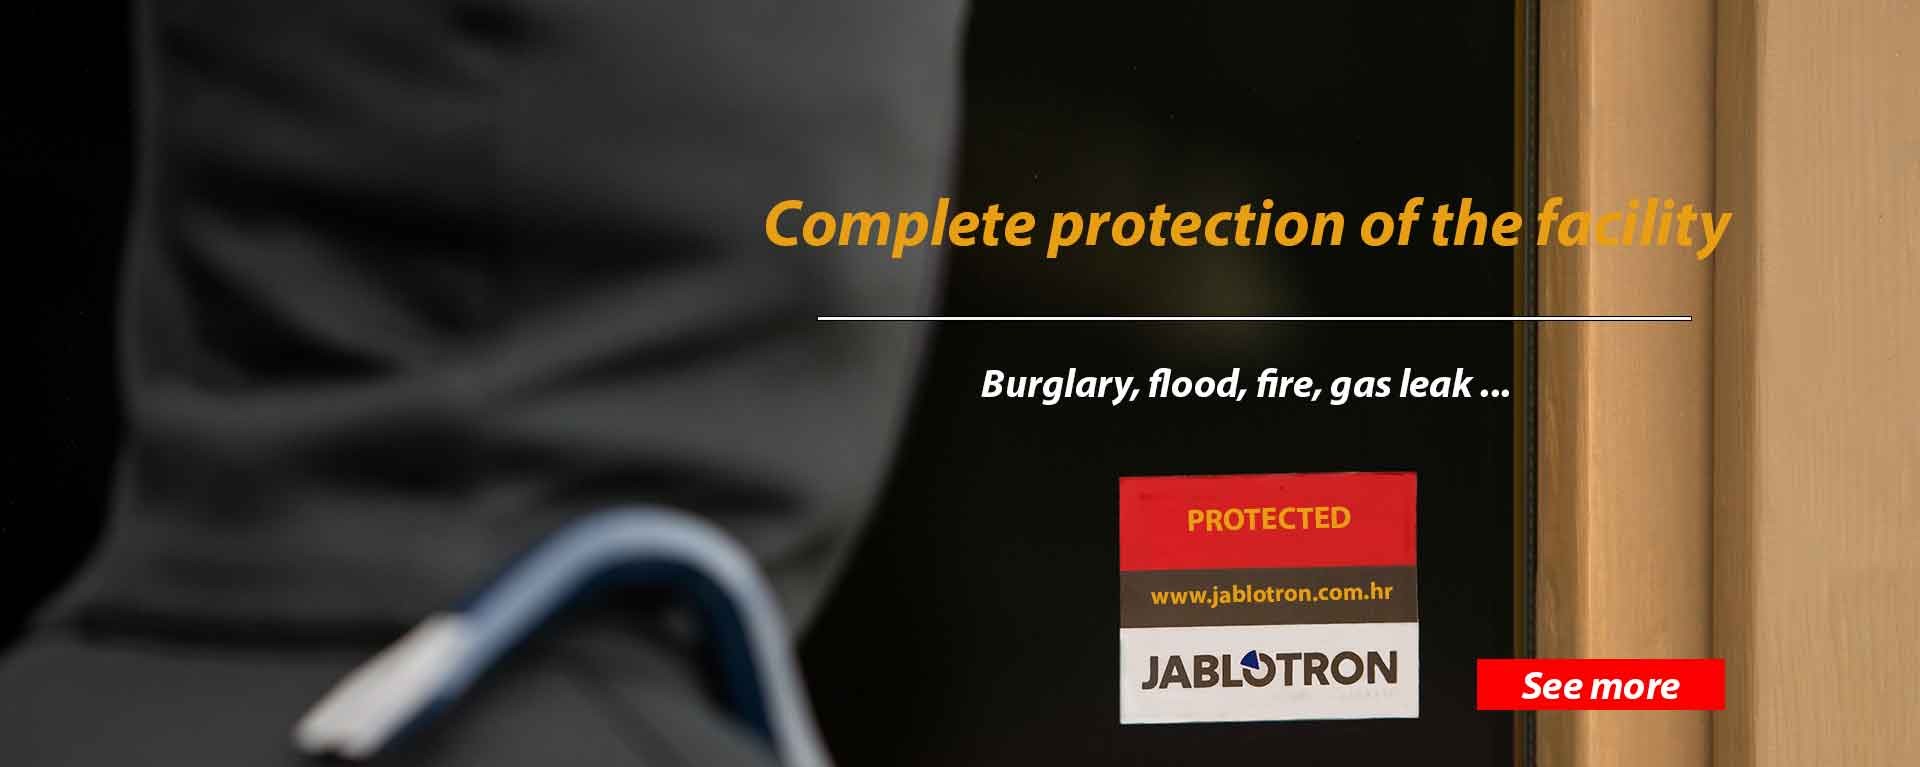 Jablotron Online Store